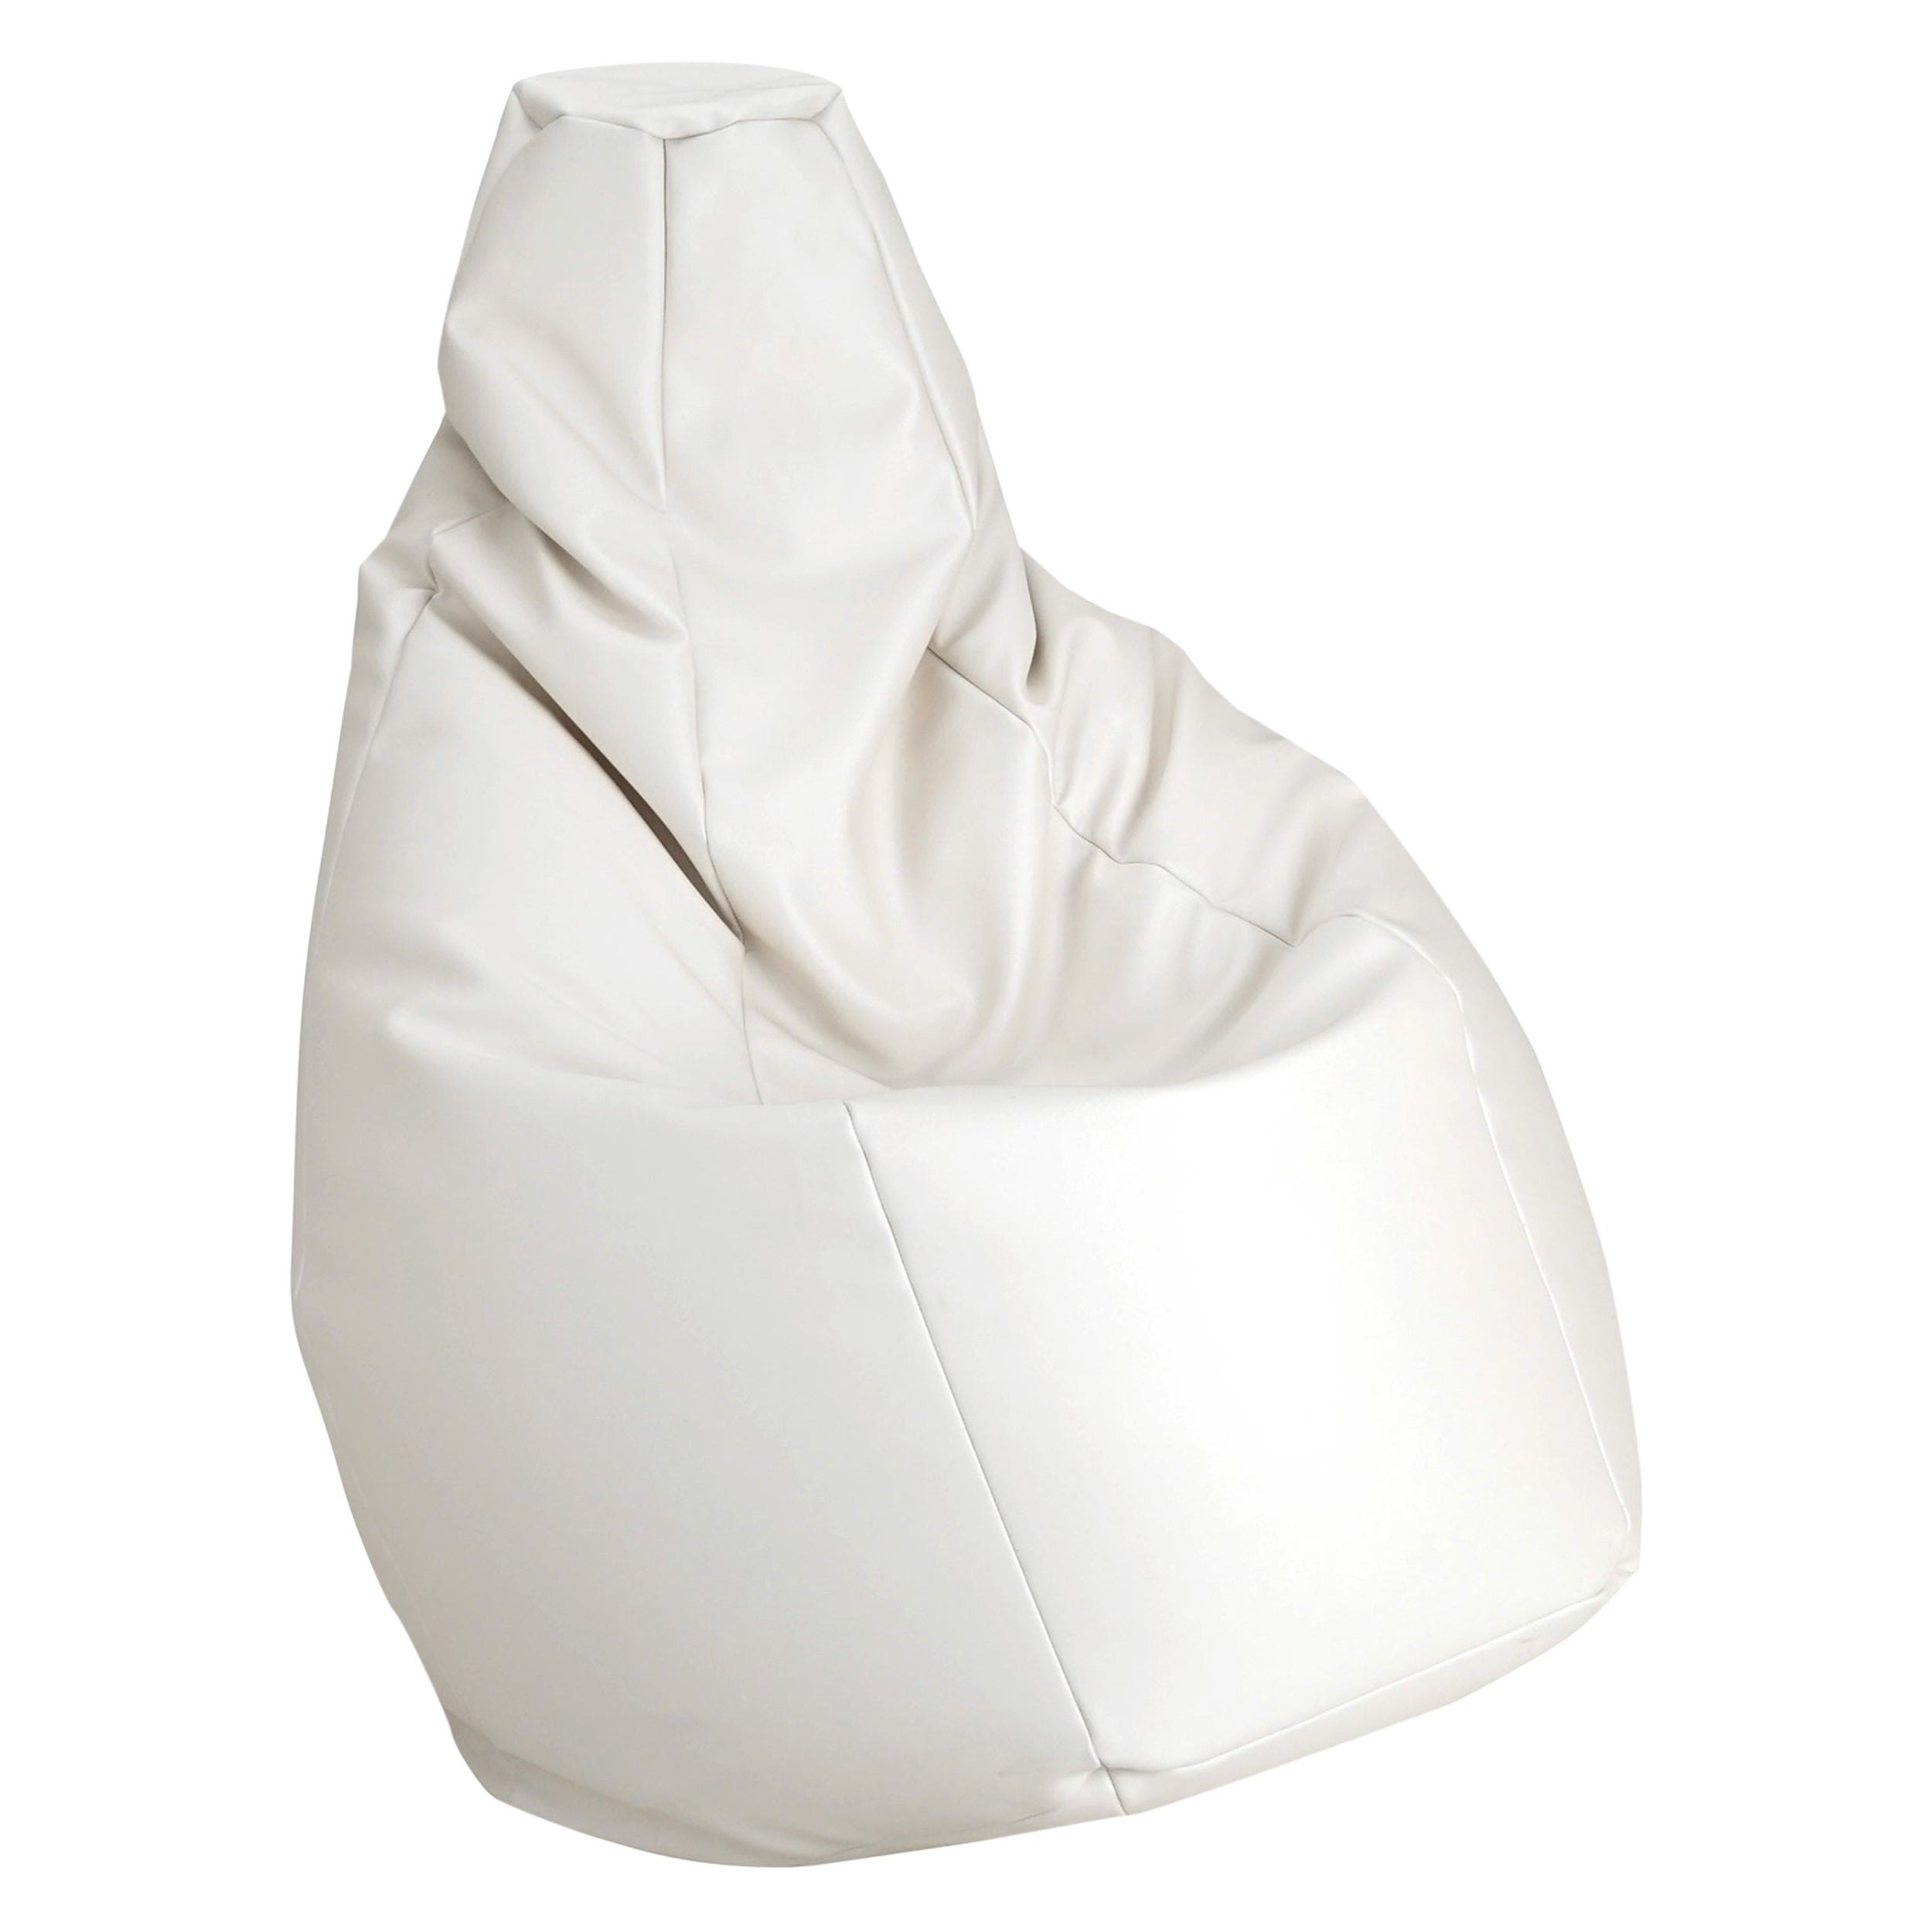 Zanotta Medium Sacco in White Vip Fabric by Gatti, Paolini, Teodoro